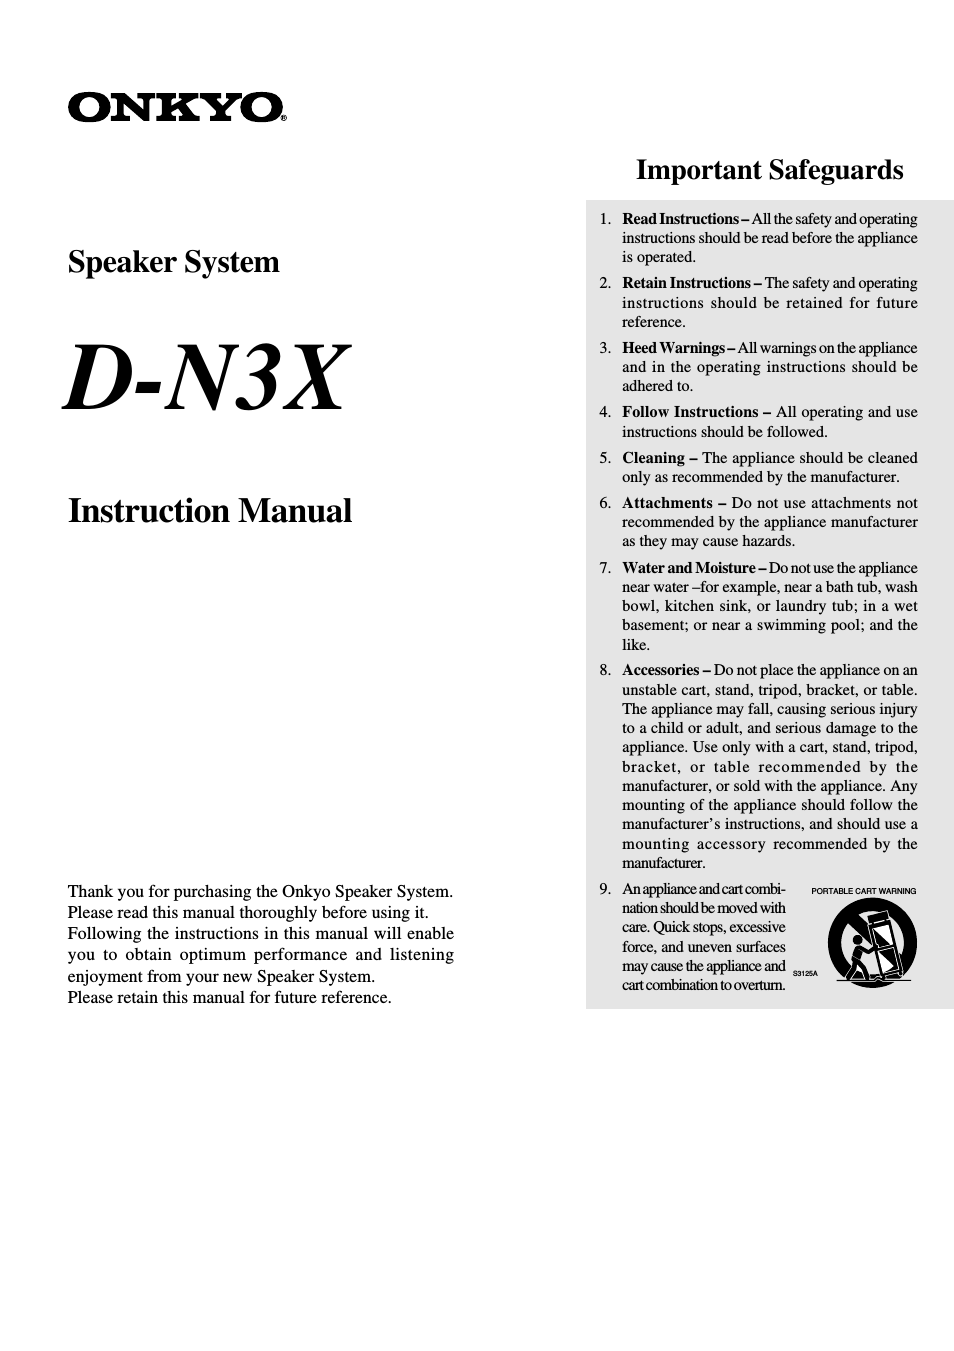 D-N3X